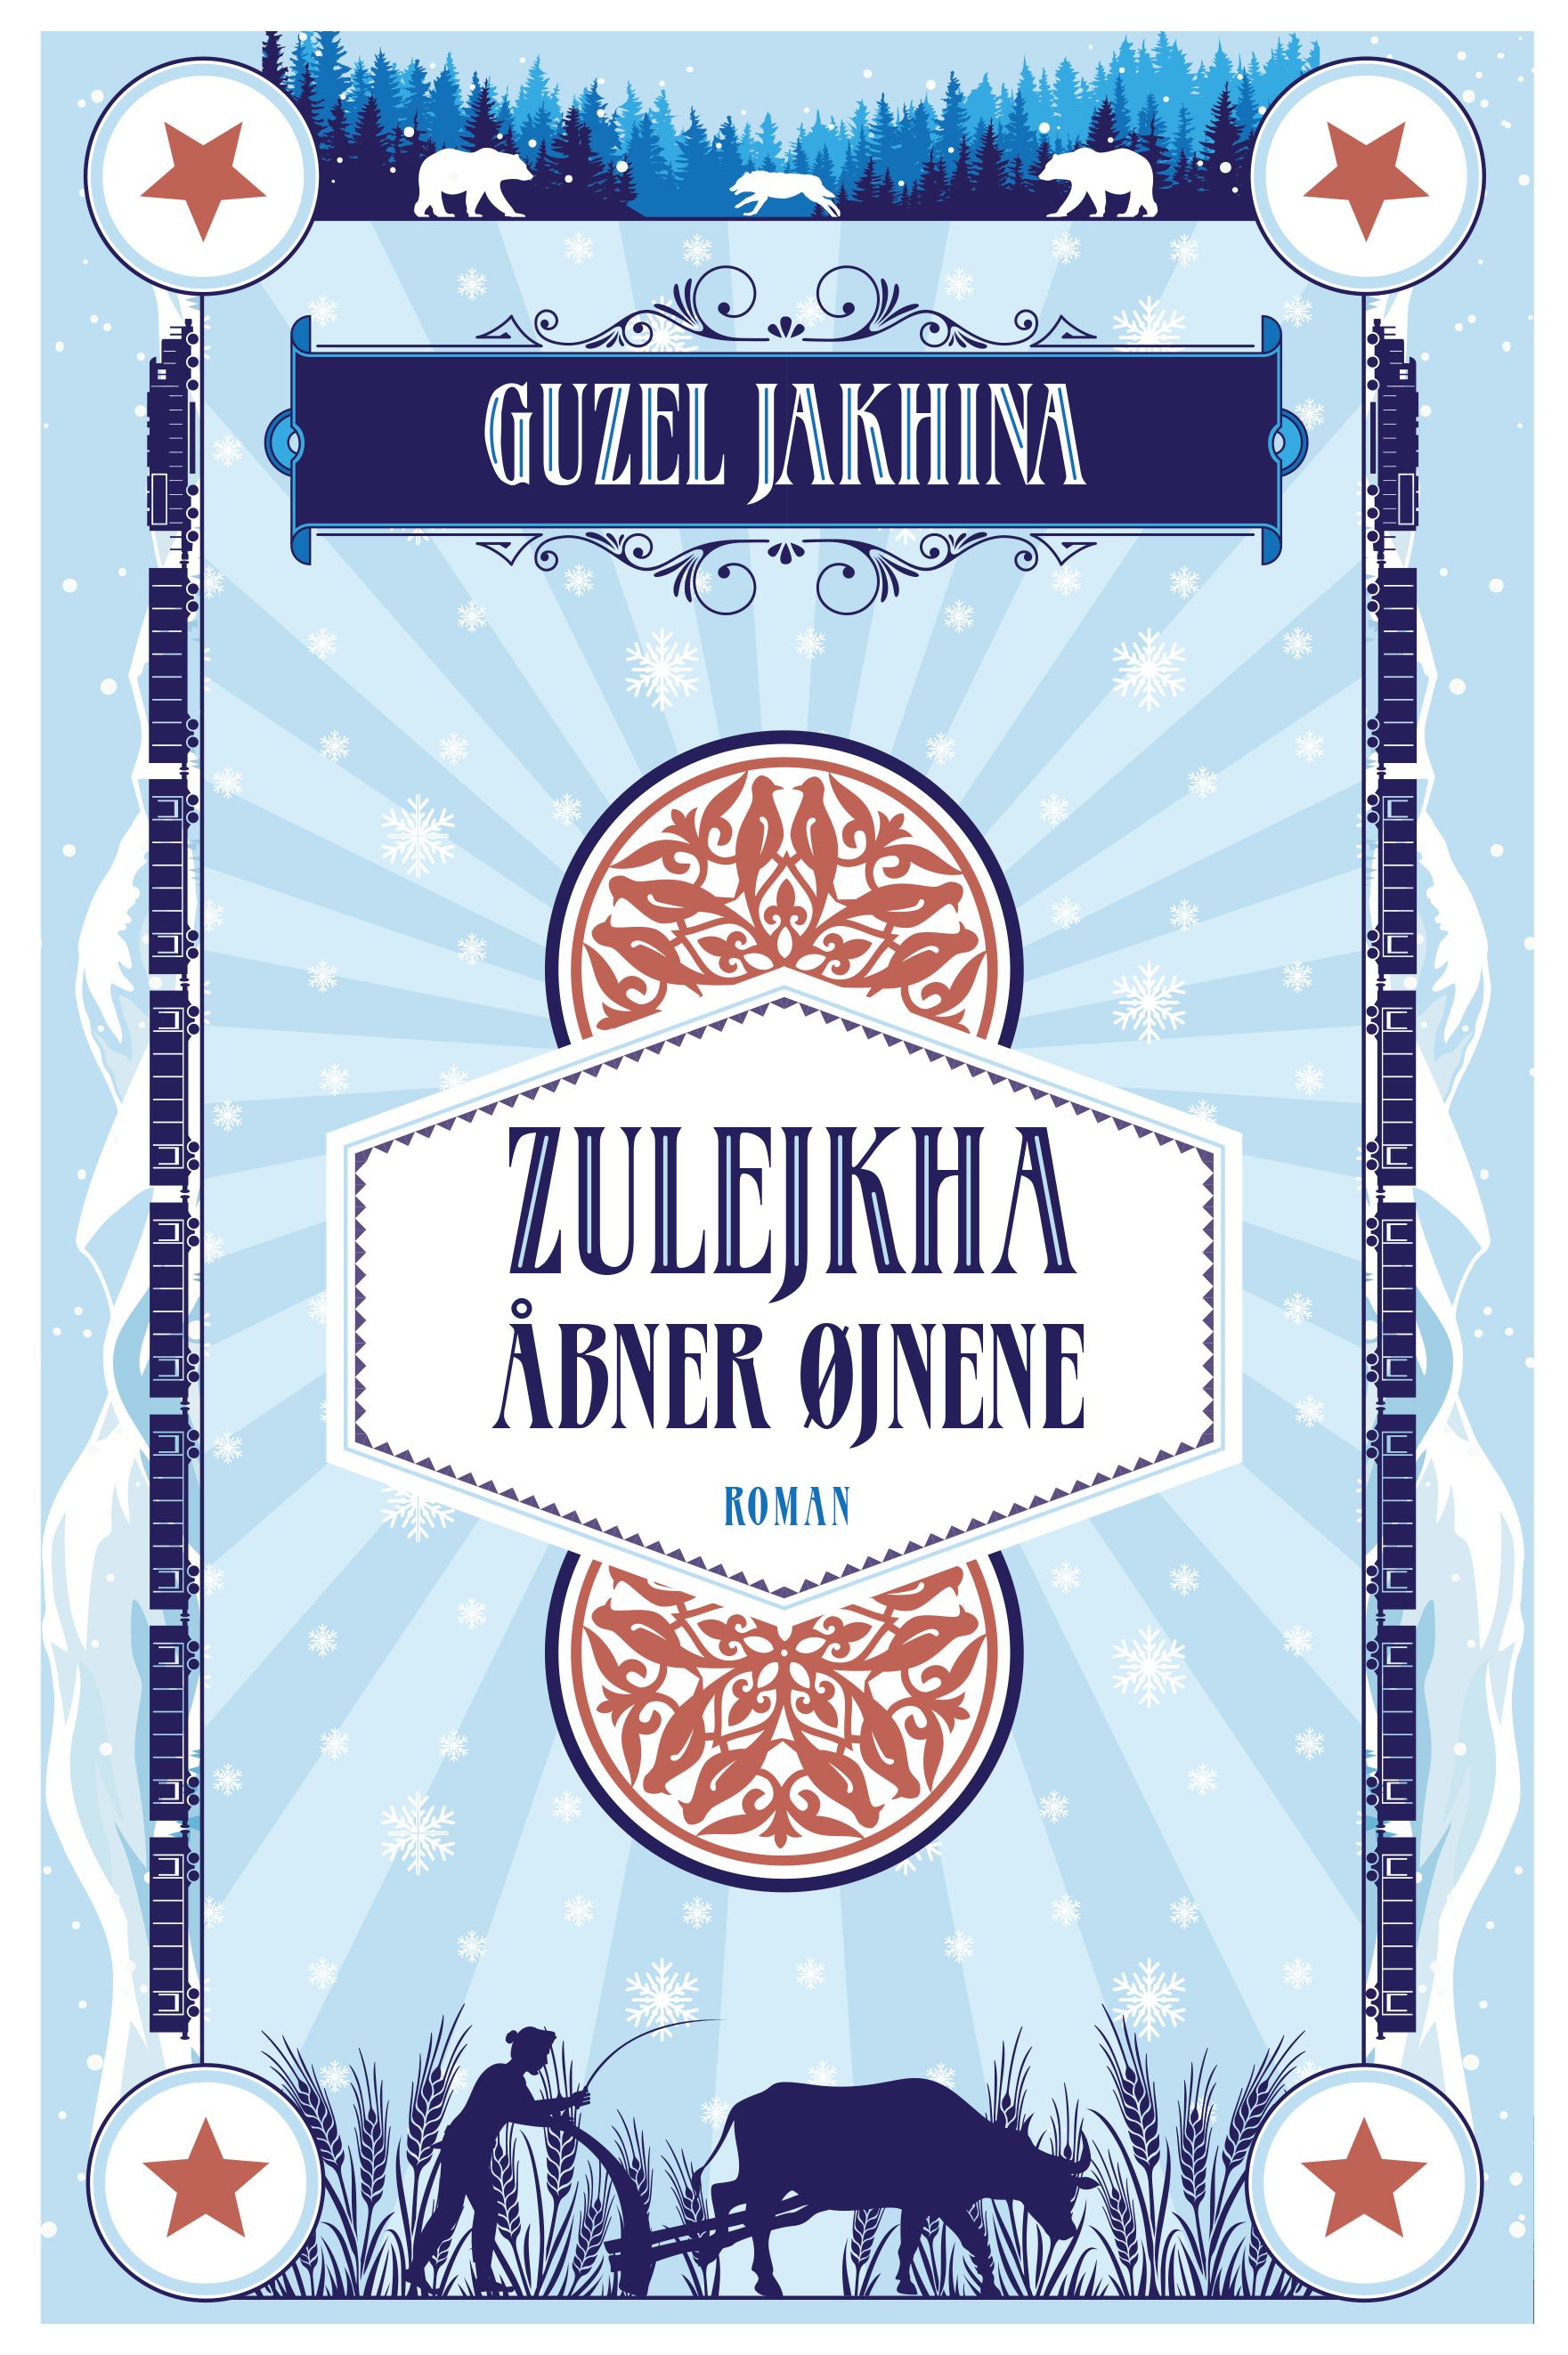 Zulejkha åbner øjnene, eBook by Guzel Yakhina